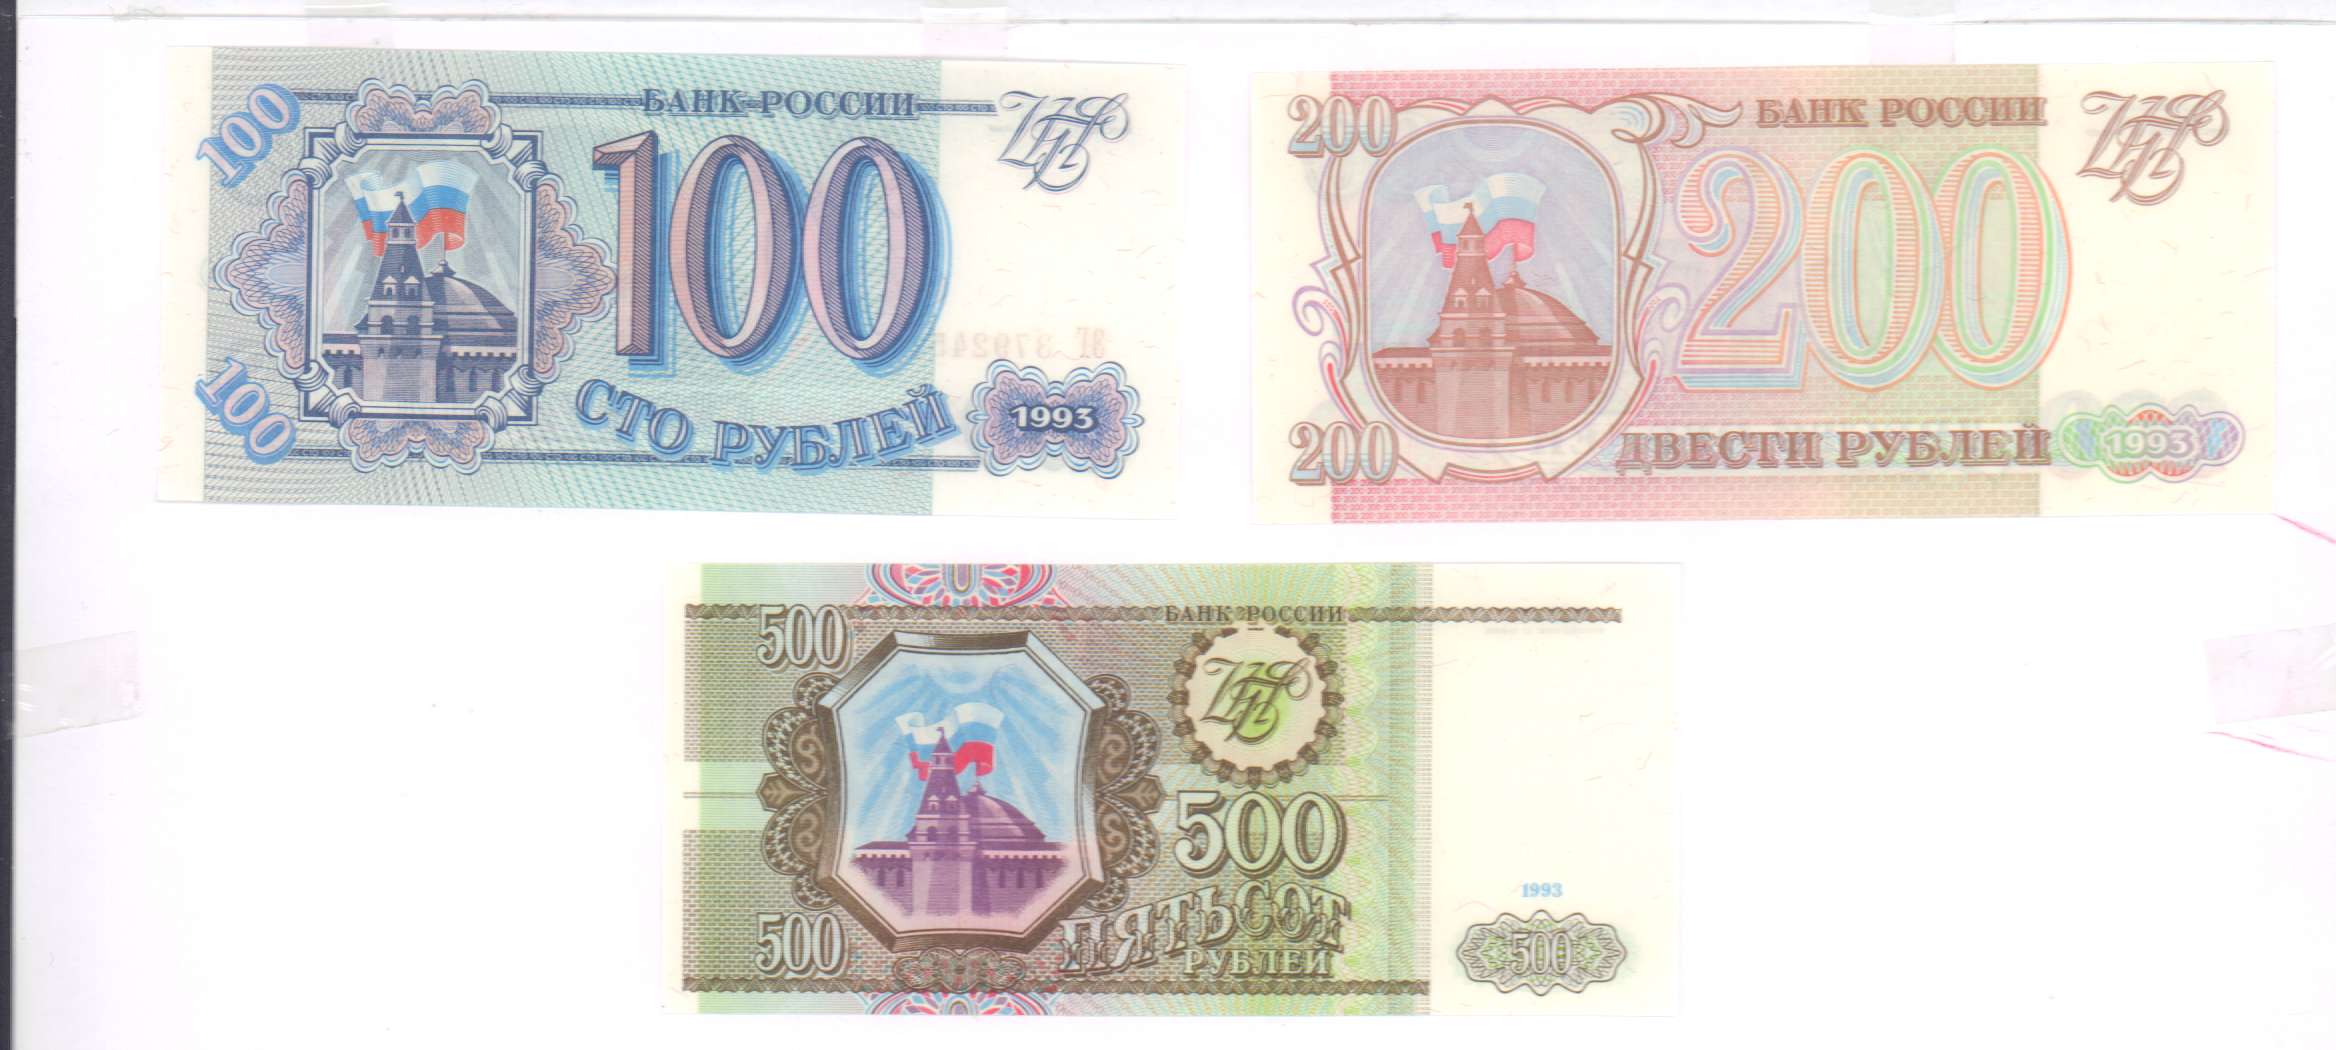 500 рублей 1993 цена. 500 Рублей 1993. Пятьсот рублей СССР 1993. 500 Рублей 1993 года. 500 Рублей 1993 года бумажные.